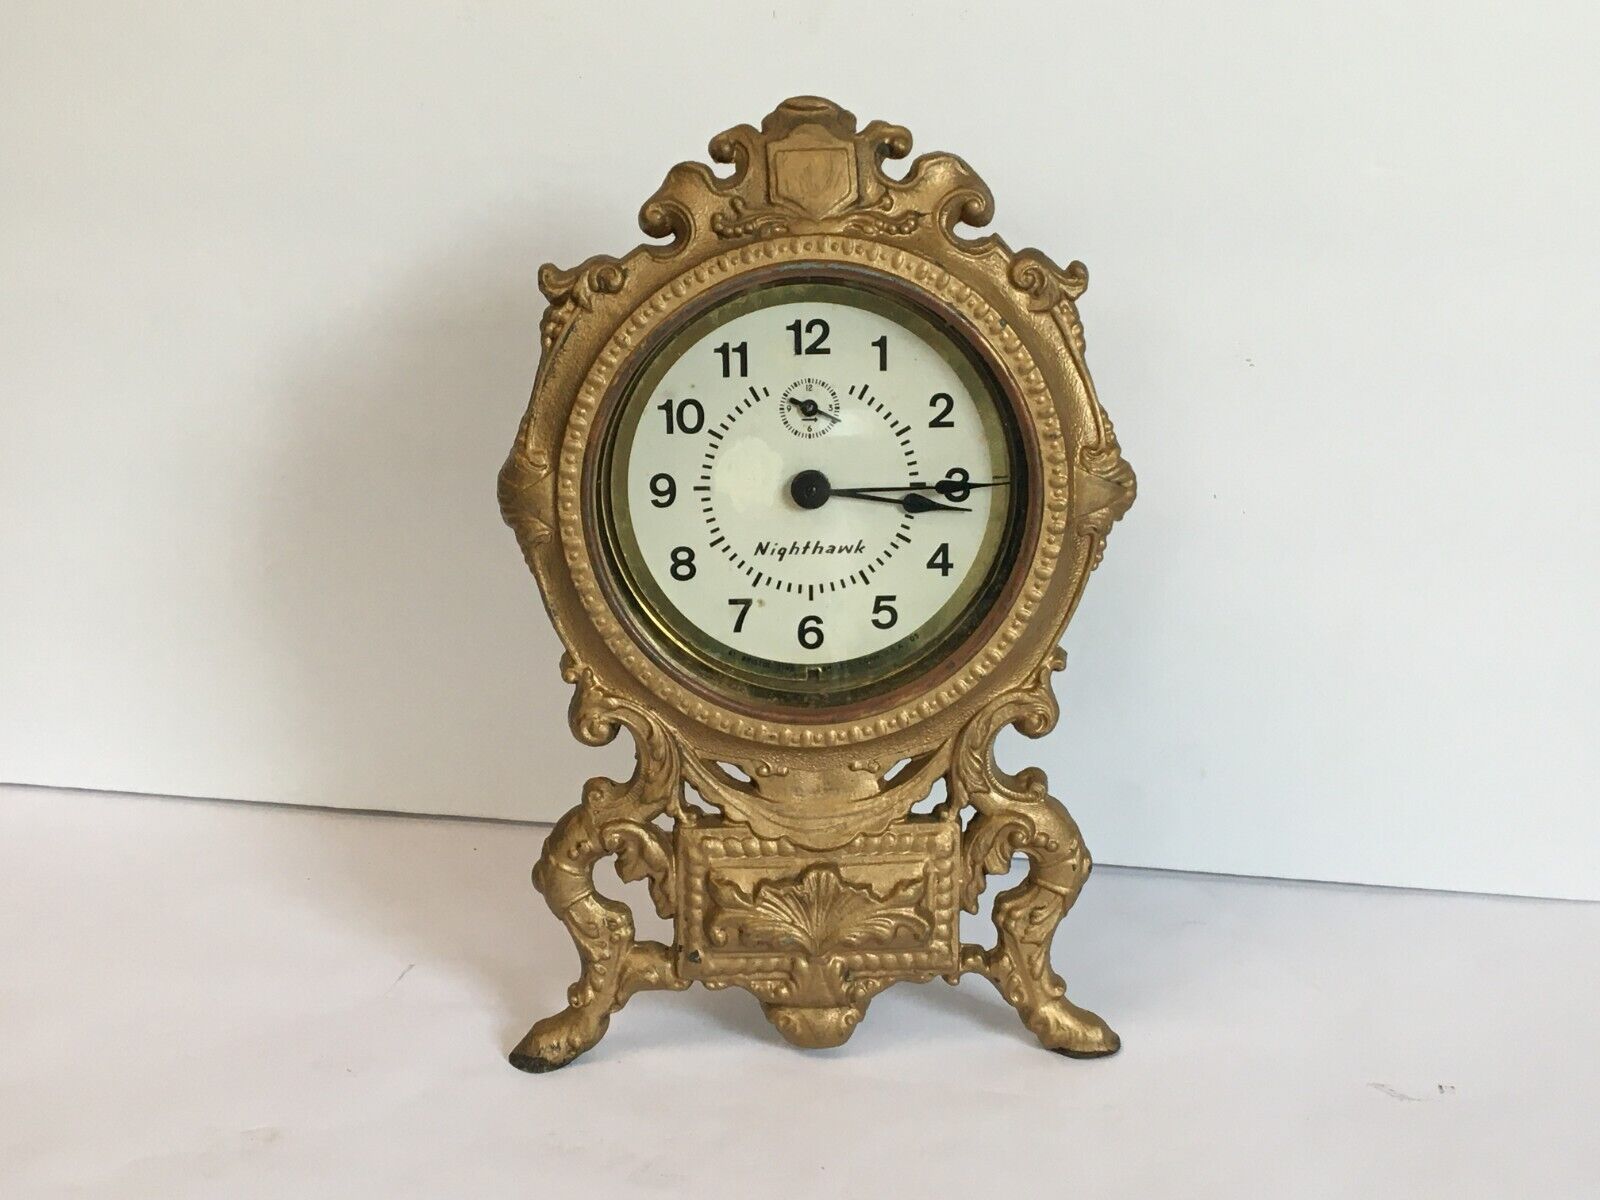 Bristol Time Nighthawk Mantle Alarm Clock French Style? Waterbury Keys. READ